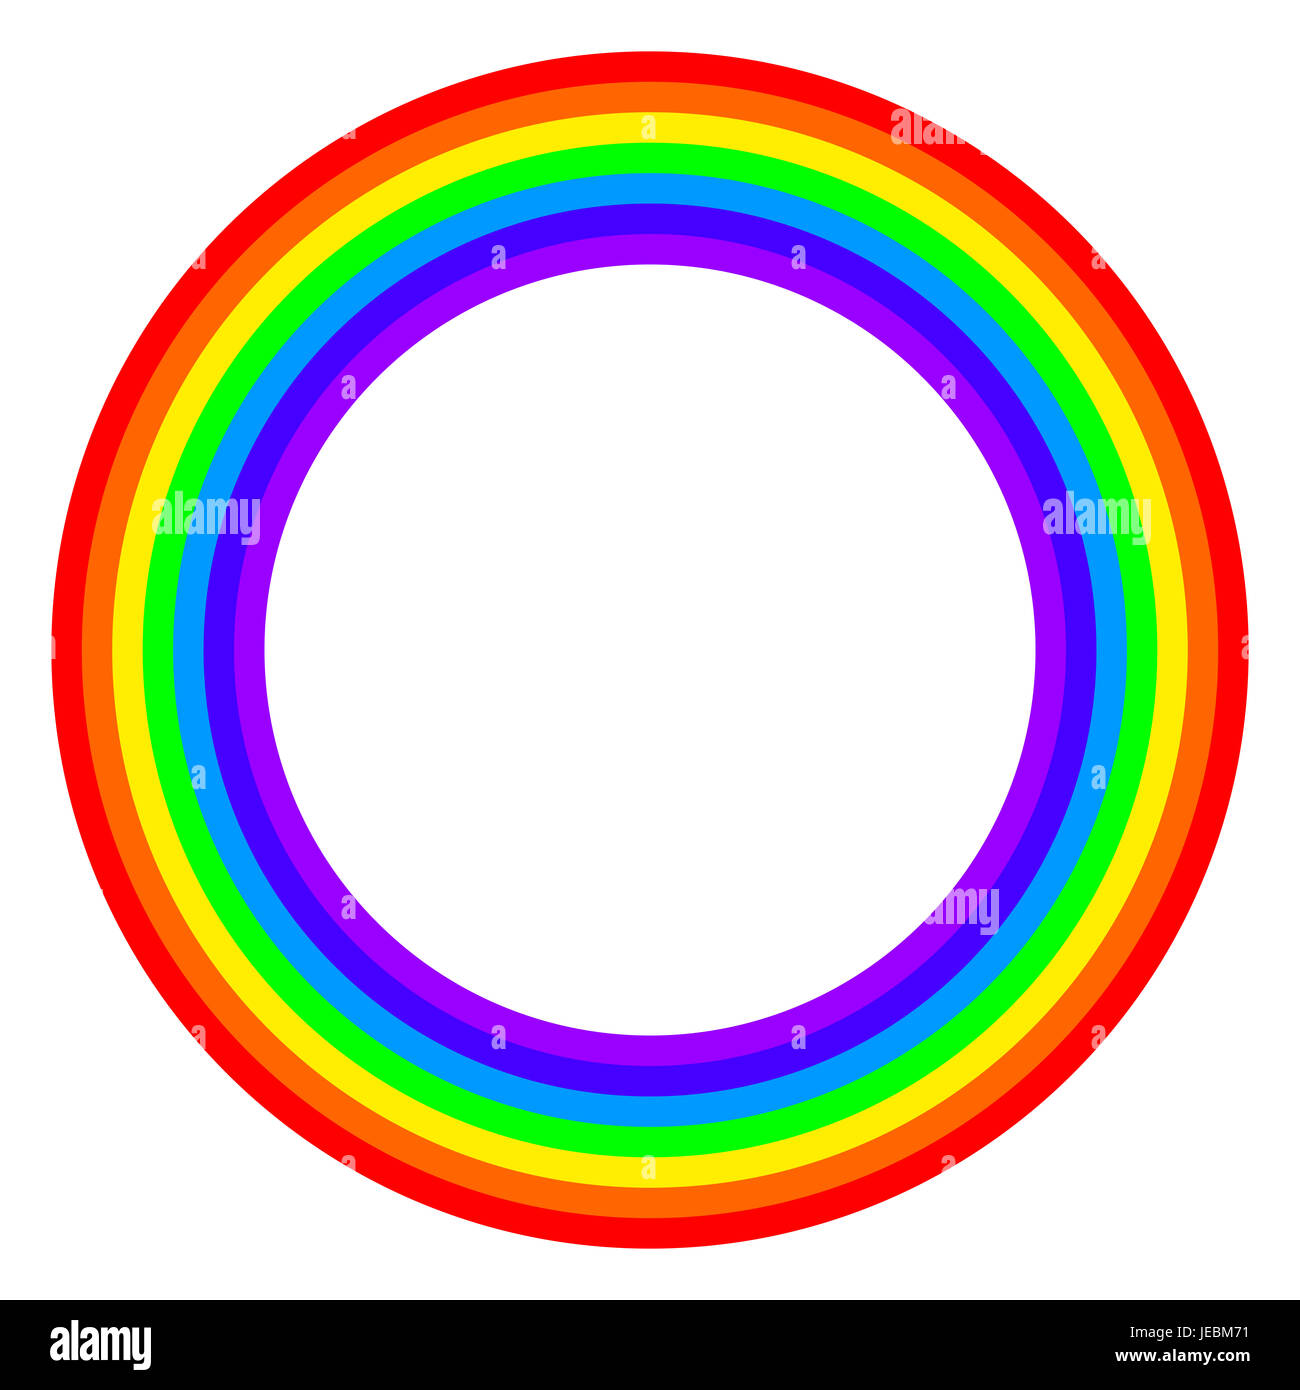 Rainbow spettro cerchio colorato. Anello con bande arcobaleno in sette colori dello spettro e la luce visibile. Foto Stock